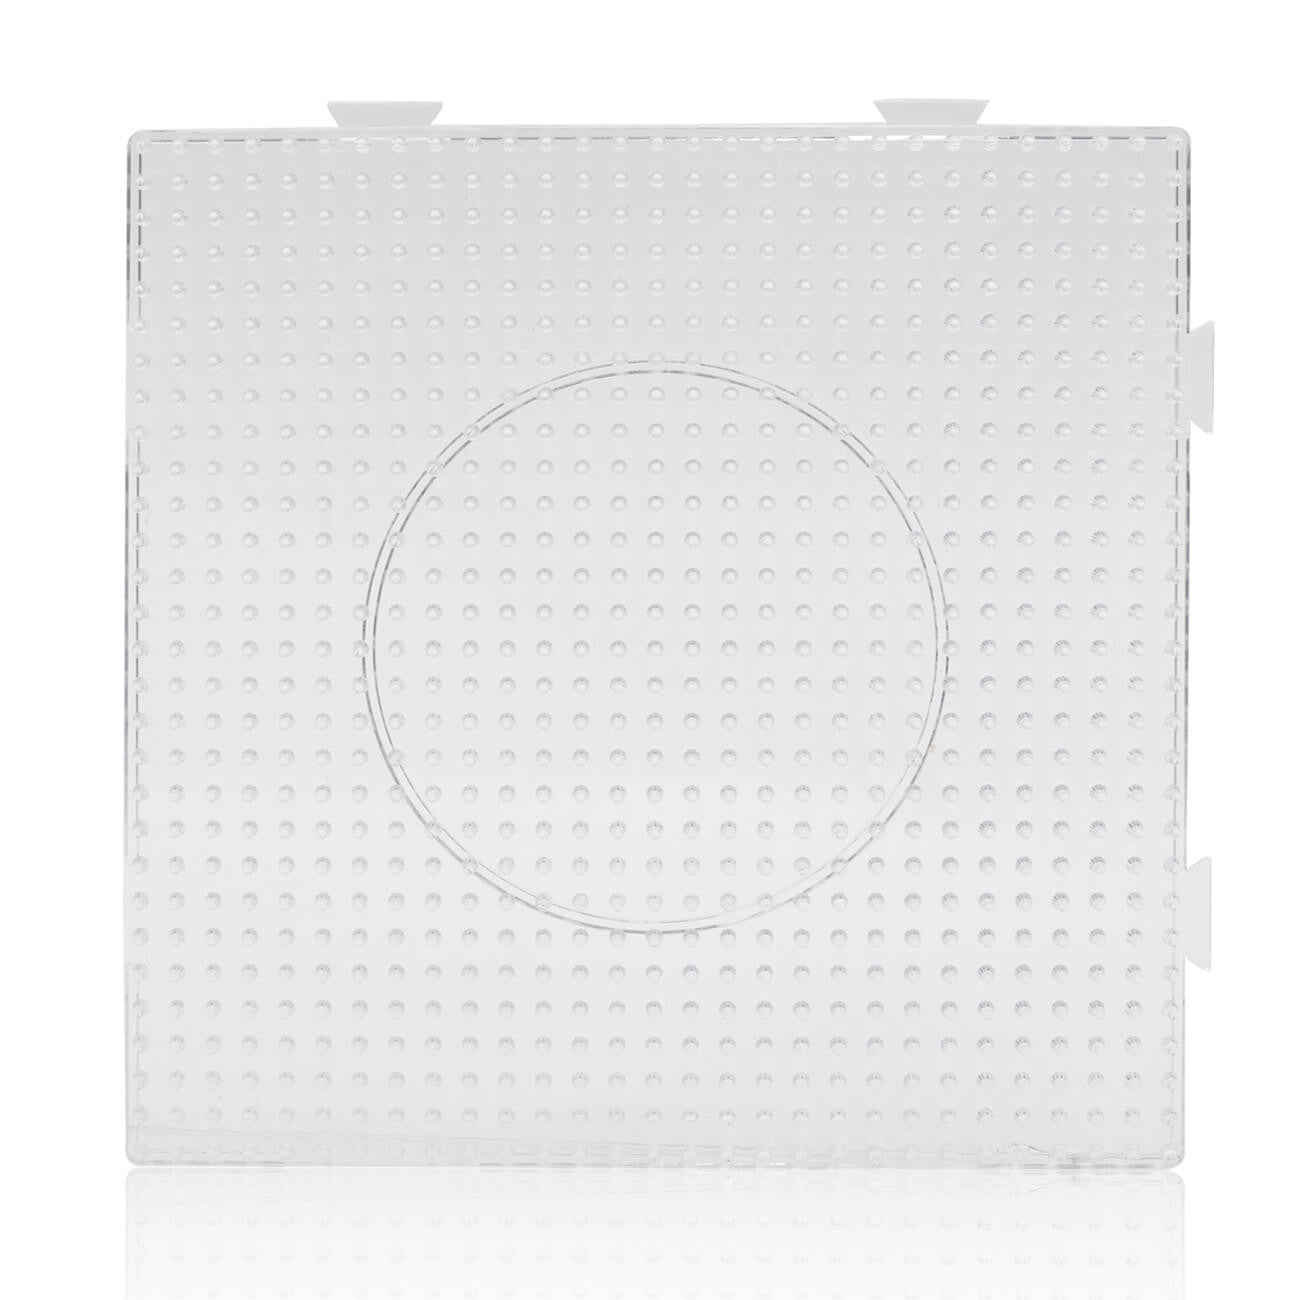 Artkalbeads Grand panneau perforé carré transparent de 5 mm pour perles midi BP01-K